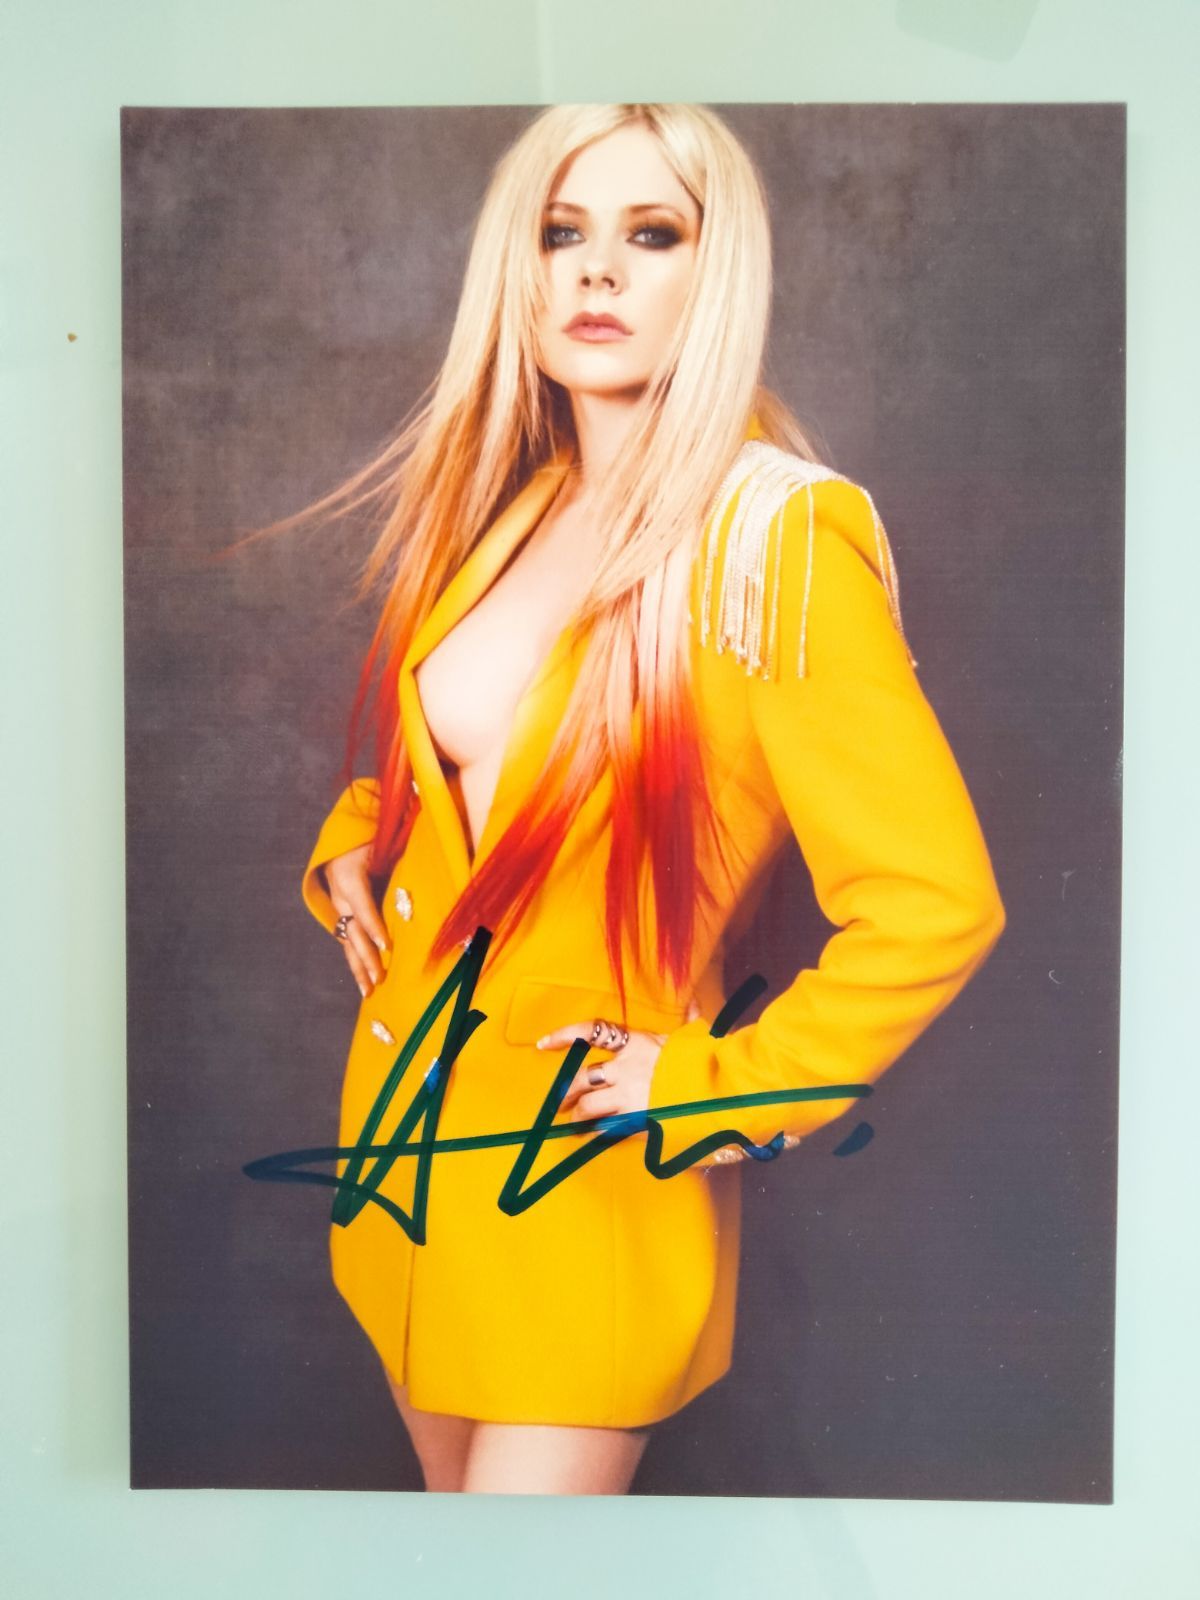 アヴリル・ラヴィーン直筆サイン入り2Lサイズ写真‥Avril Lavigne…2枚目のアルバムUnde